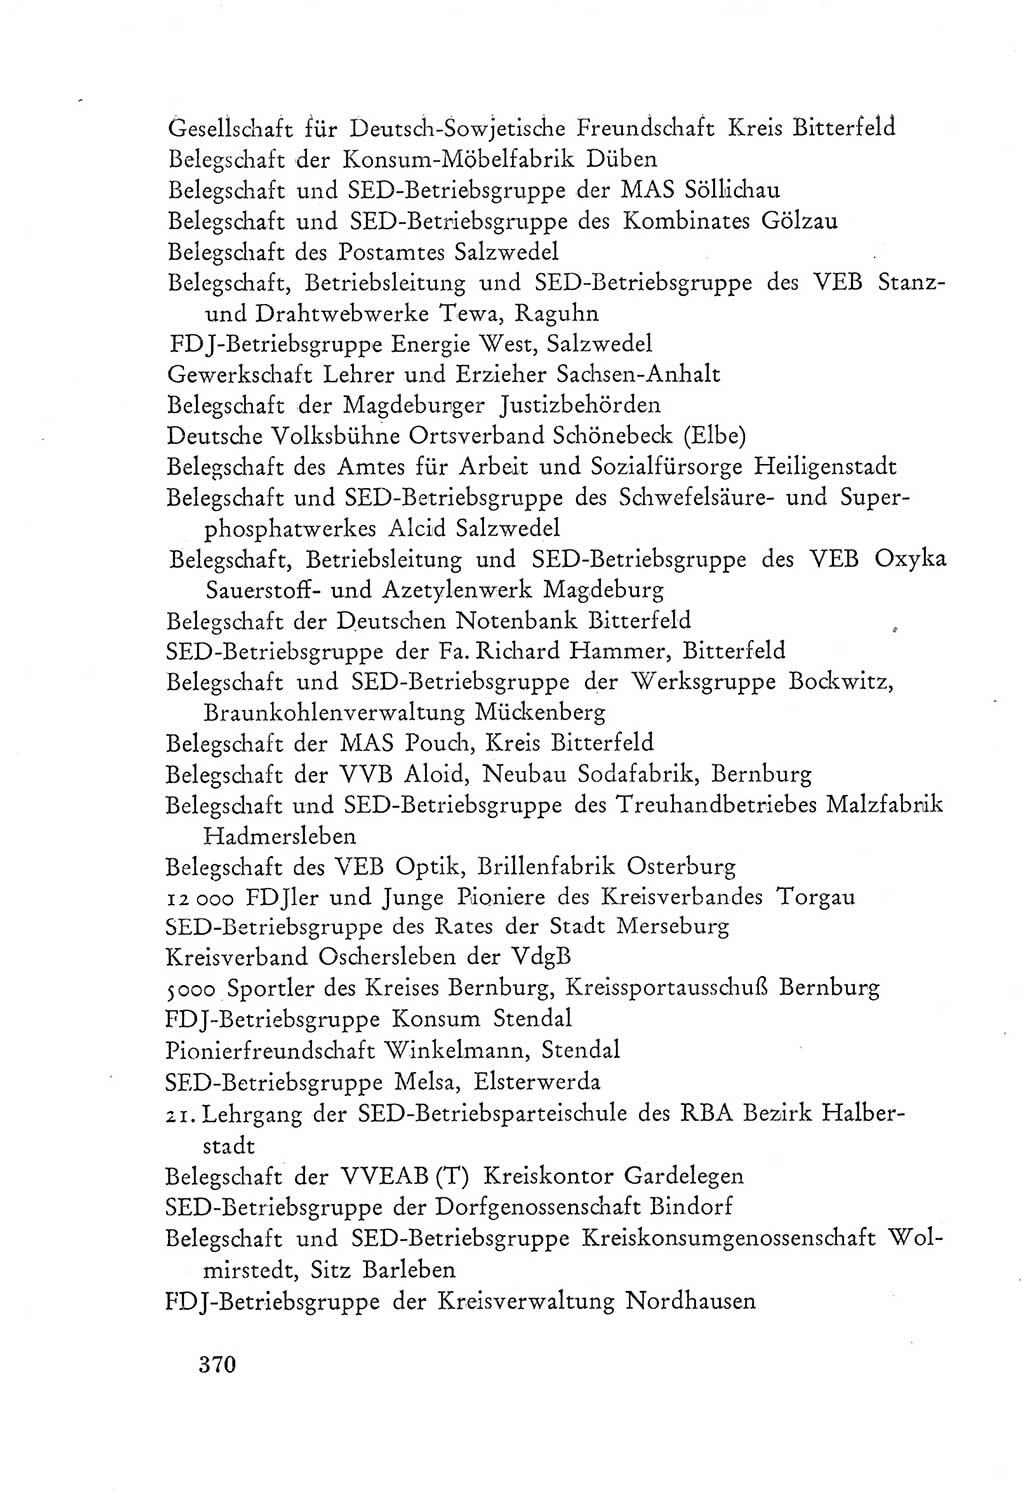 Protokoll der Verhandlungen des Ⅲ. Parteitages der Sozialistischen Einheitspartei Deutschlands (SED) [Deutsche Demokratische Republik (DDR)] 1950, Band 2, Seite 370 (Prot. Verh. Ⅲ. PT SED DDR 1950, Bd. 2, S. 370)